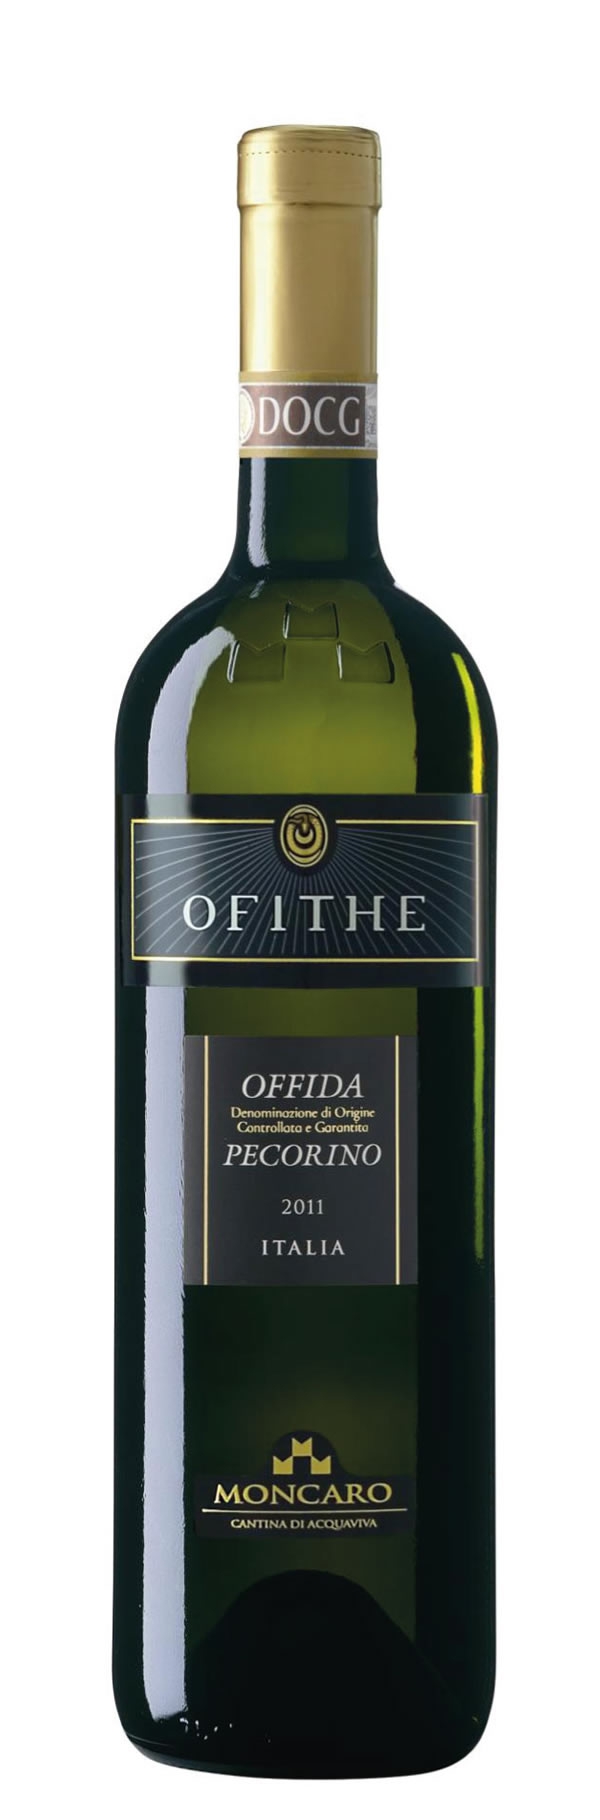 Ofithe Pecorino